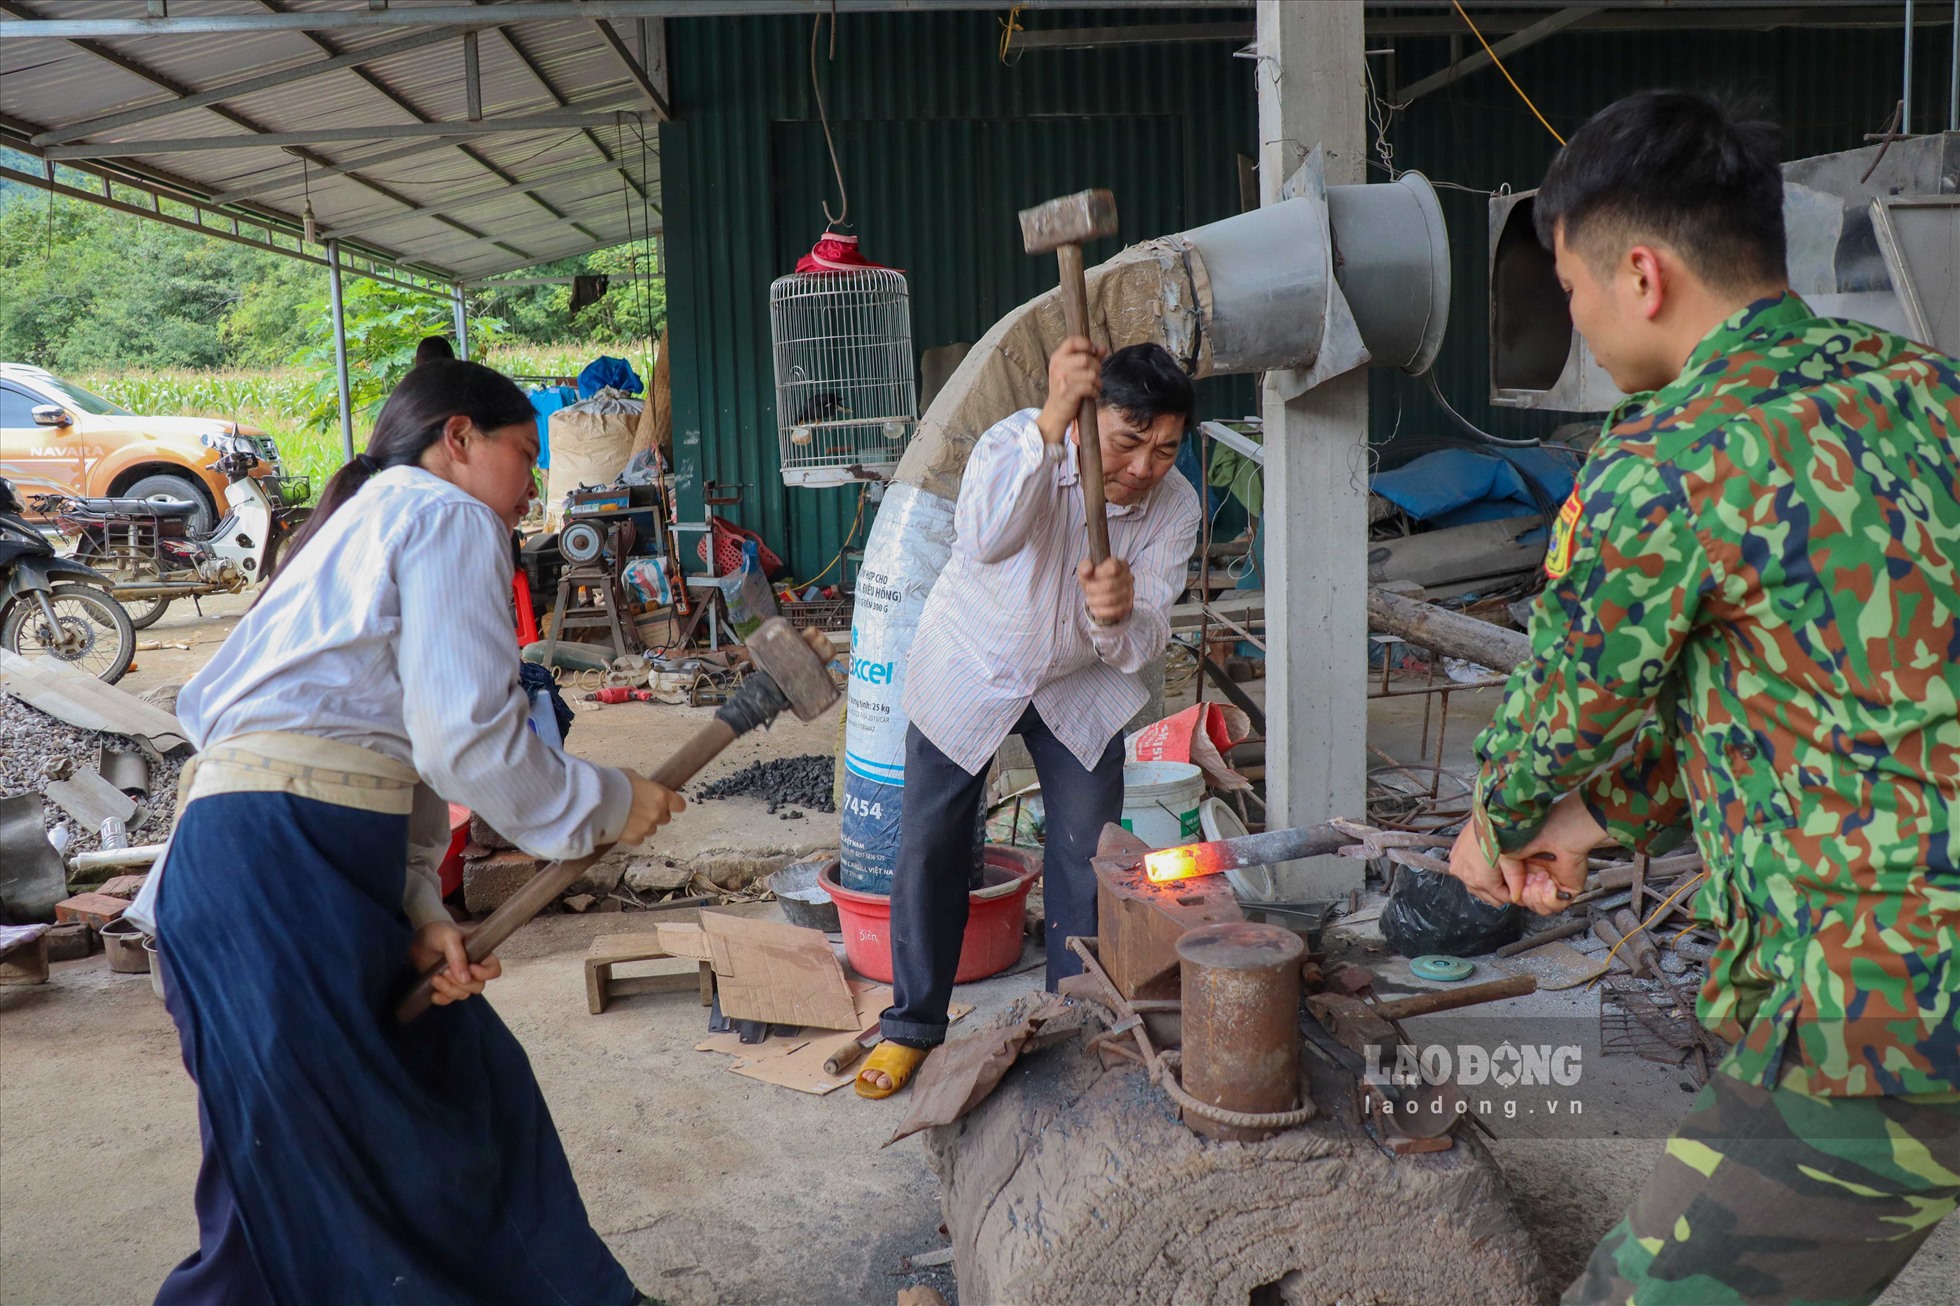 Theo chỉ dẫn của người dân, PV ghé thăm lò rèn Minh Tuấn của ông Nông Văn Tuấn (SN 1976) - nghệ nhân duy nhất của làng nghề truyền thống này. Khi PV có mặt, tiếng búa tiếng đe vang lên liên tục, 3 thành viên trong gia đình ông đang cần mẫn làm việc, người đập người giữ.